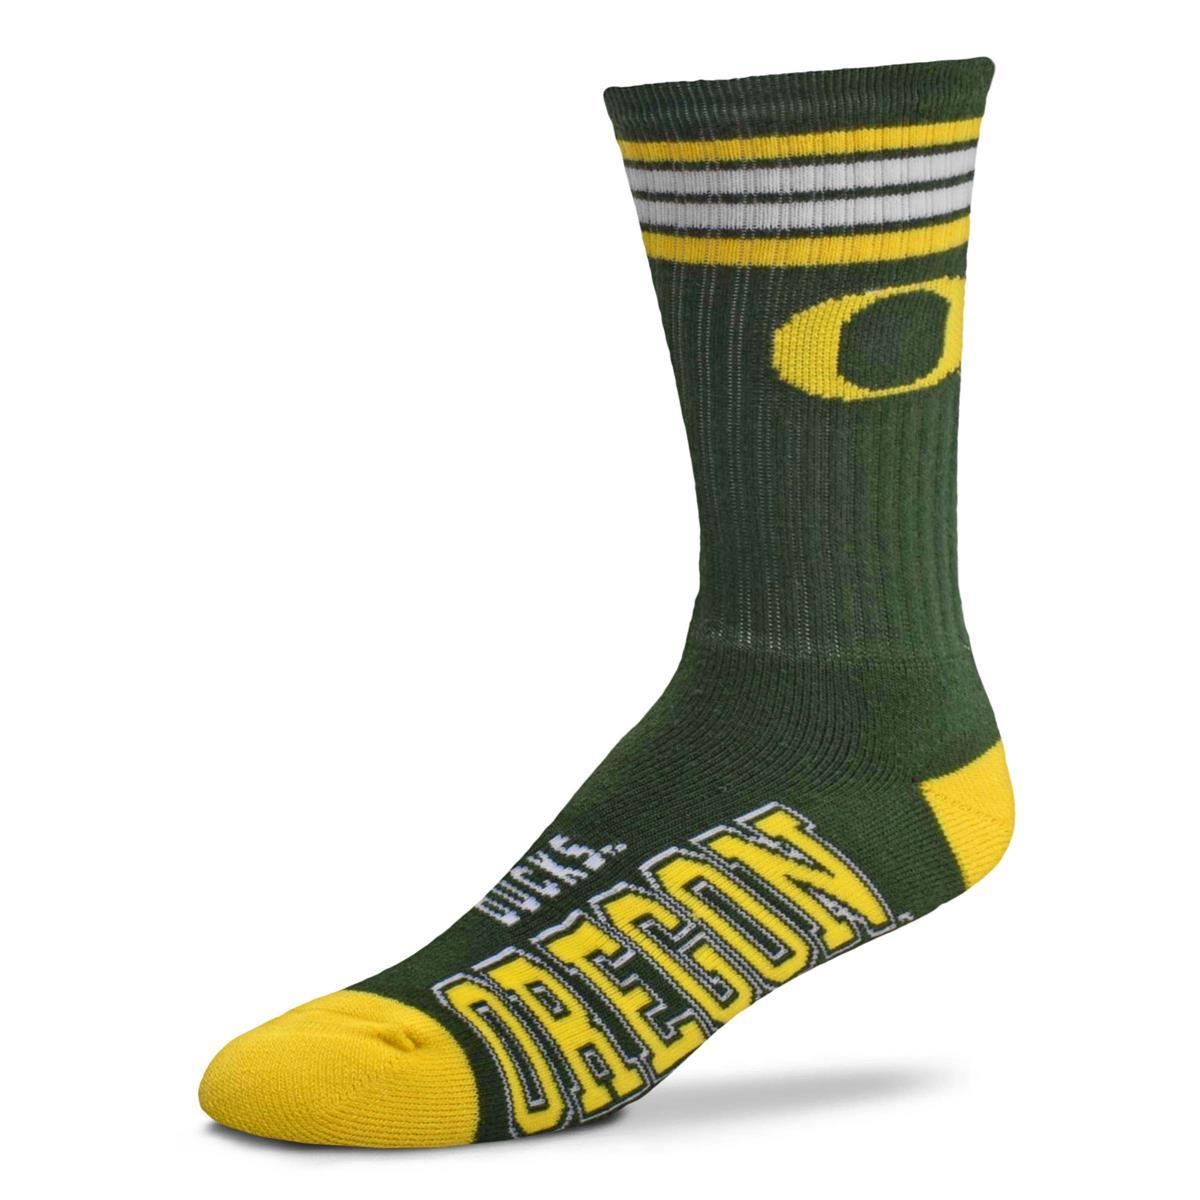 For Bare Feet - University of Oregon Ducks 4 Stripe Crew Socks | Women's - Knock Your Socks Off